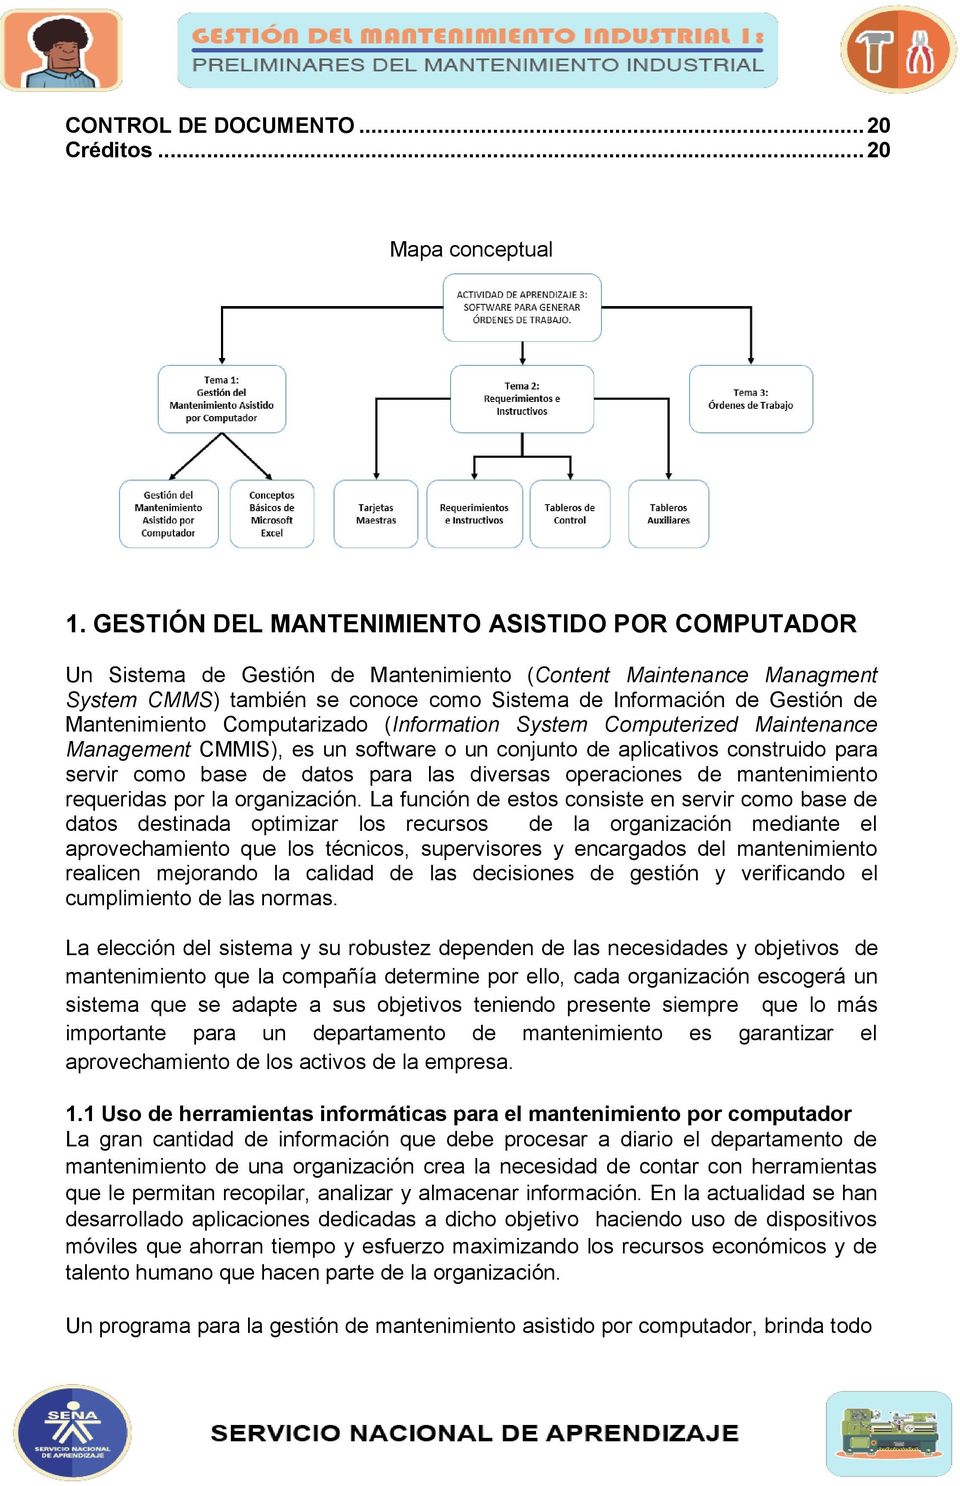 Mantenimiento Computarizado (Information System Computerized Maintenance Management CMMIS), es un software o un conjunto de aplicativos construido para servir como base de datos para las diversas